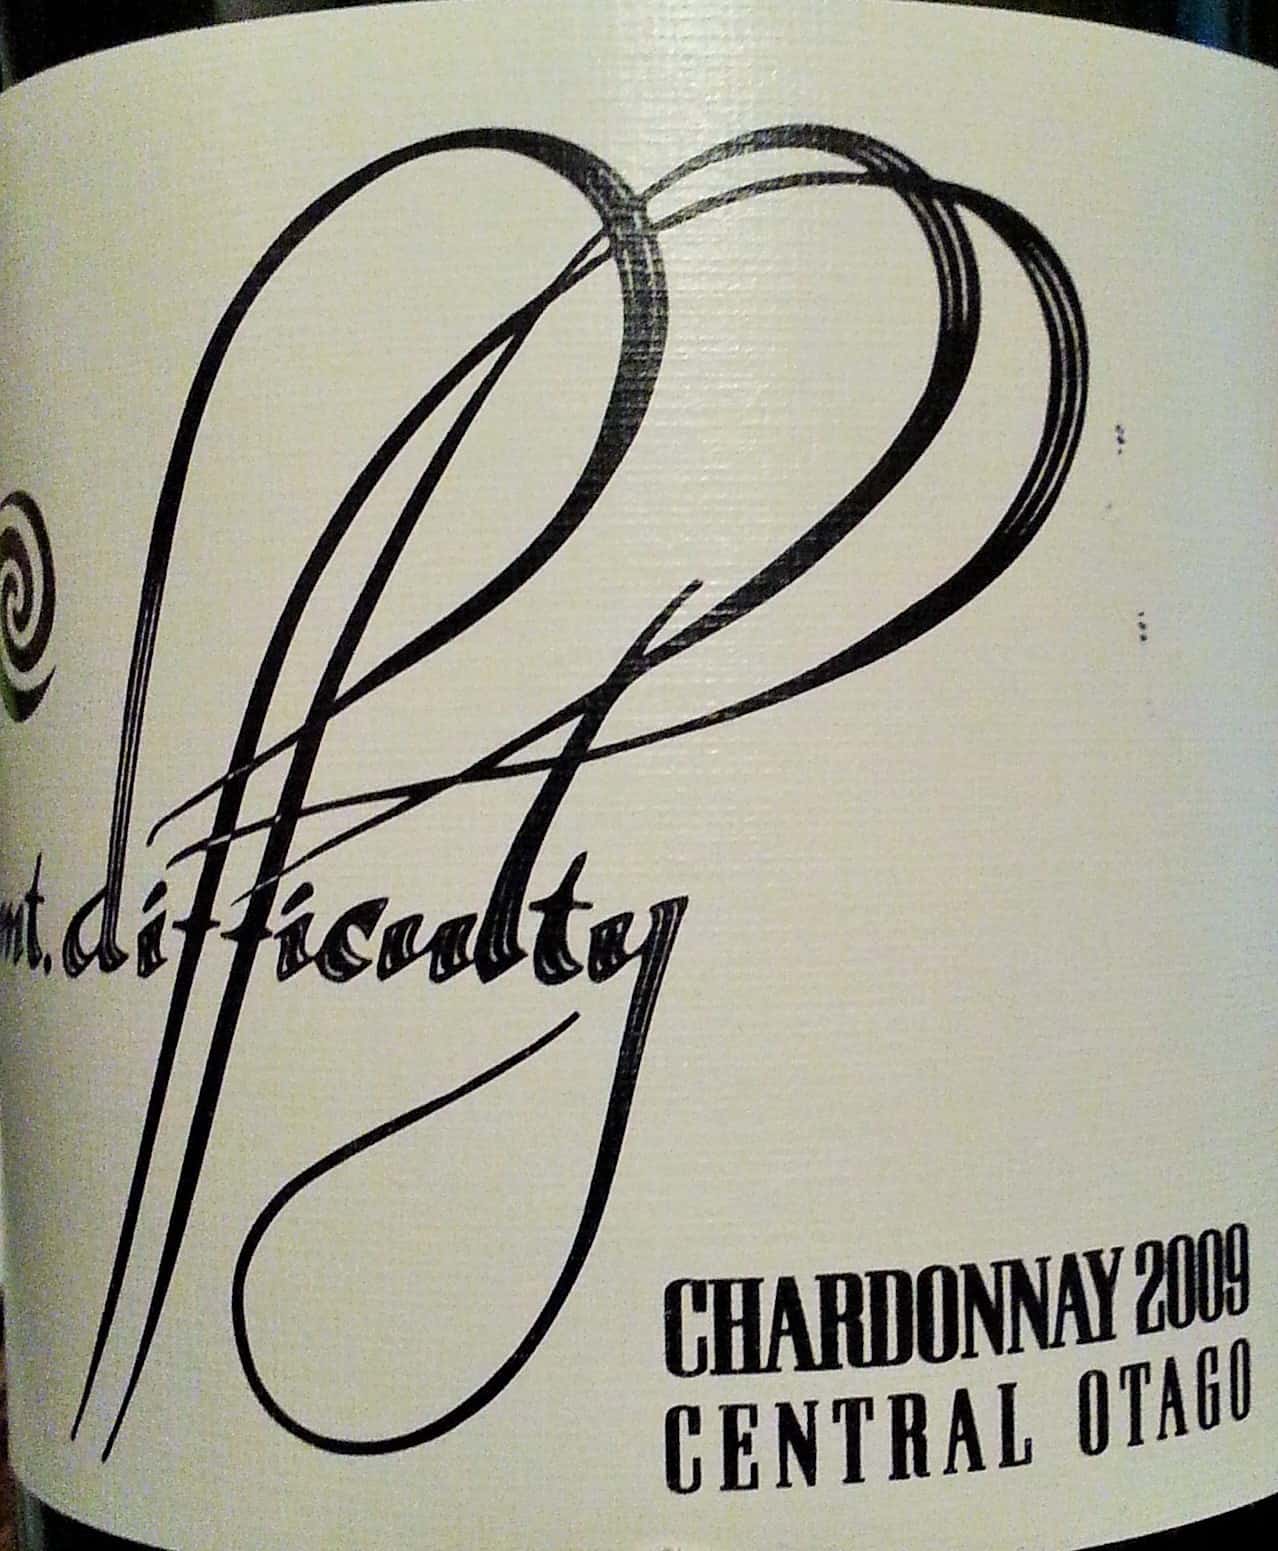 Mt Difficulty Chardonnay 2009